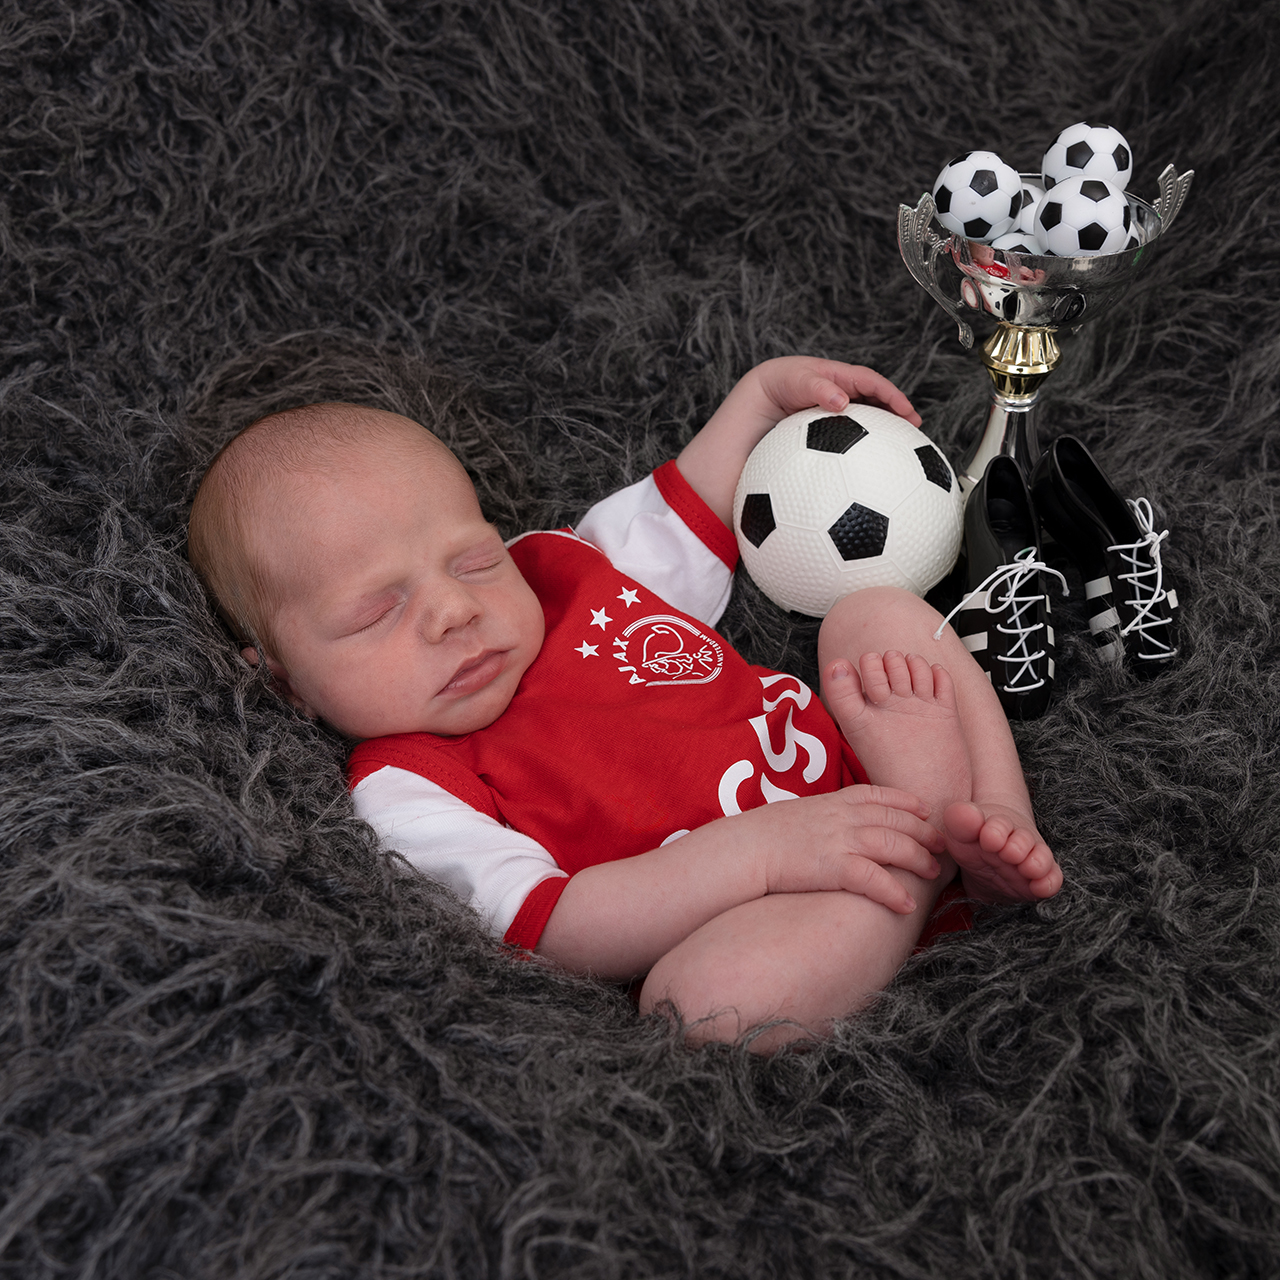 Fotografie Ine van Boerdonk fotograaf Boekel newborn baby voetbal ajax psv